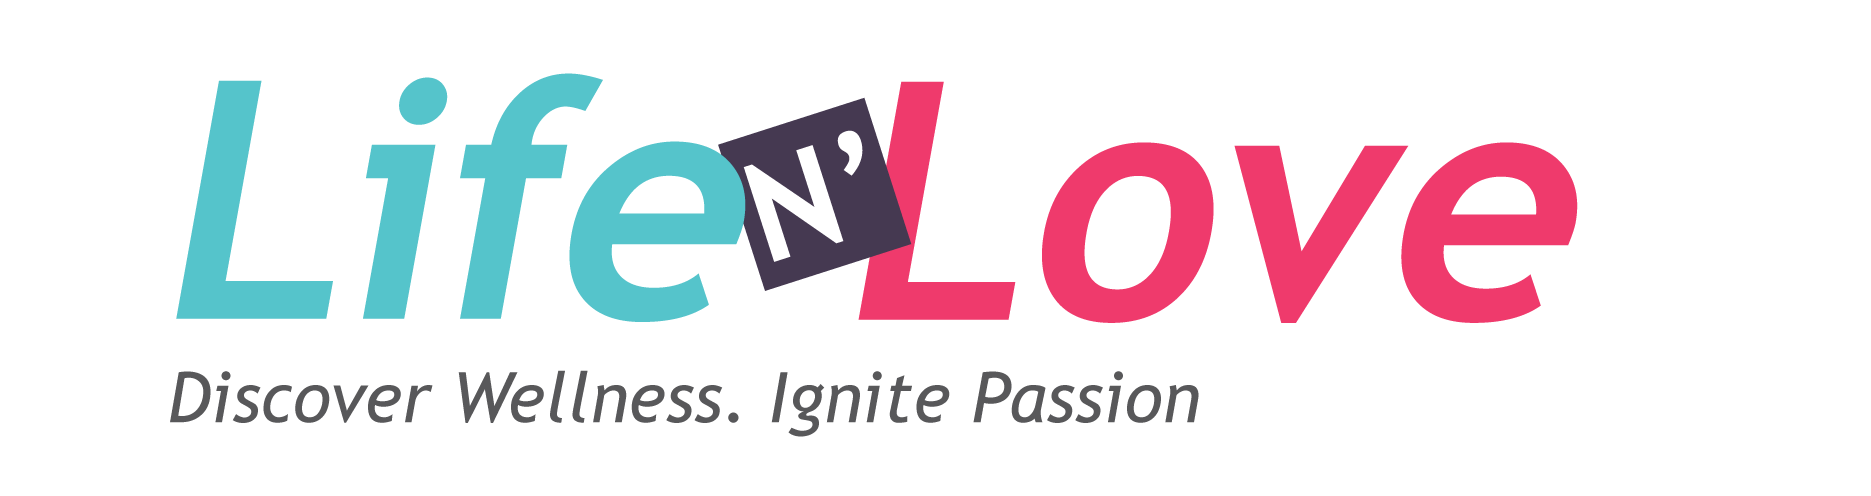 life n love logo